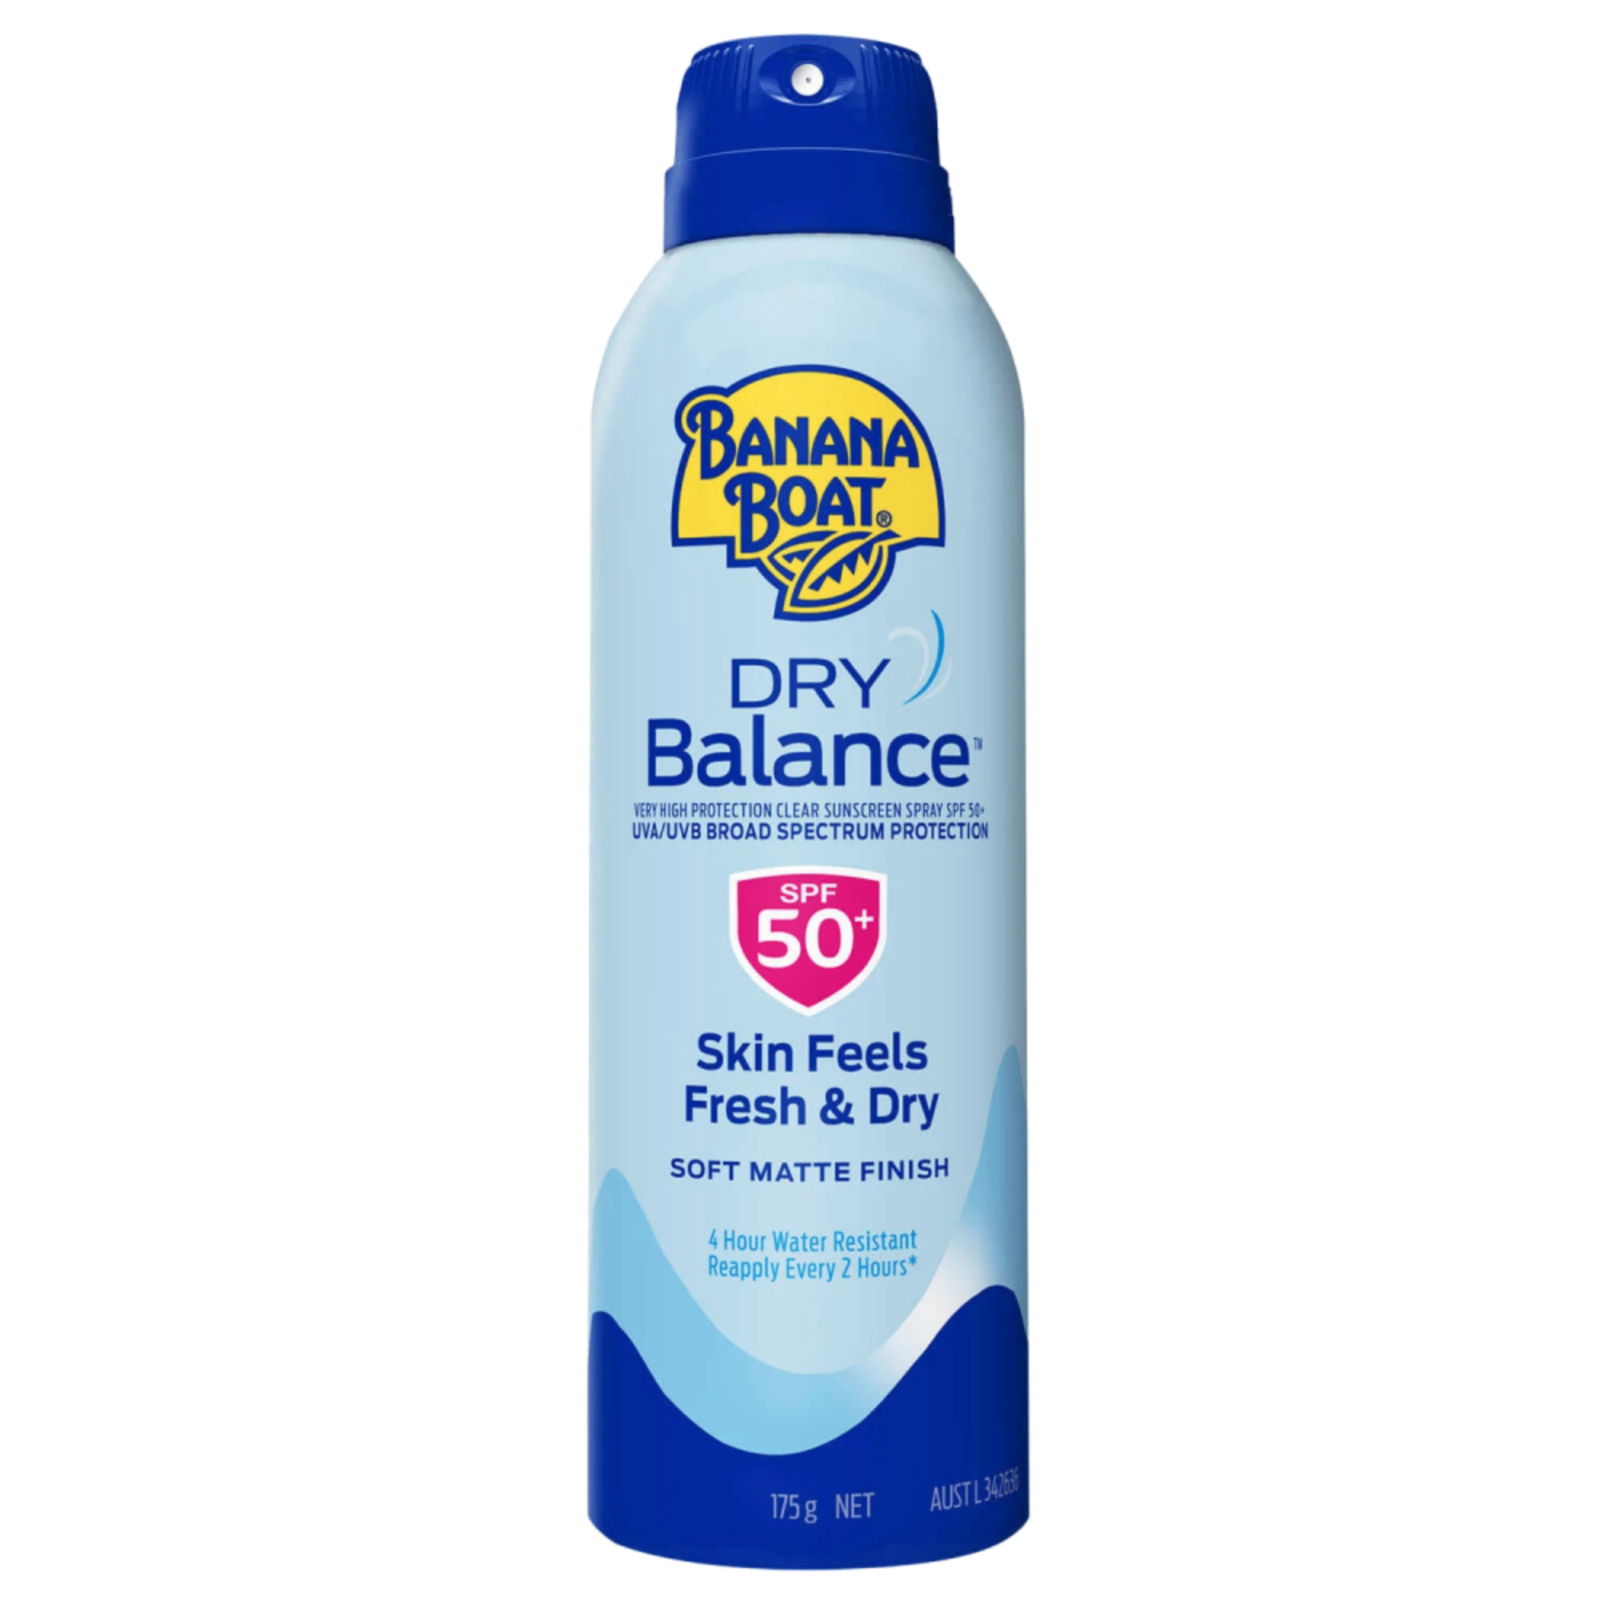 Banana Boat Dry Balance SPF 50+ Sunscreen Spray 175g - $92.92